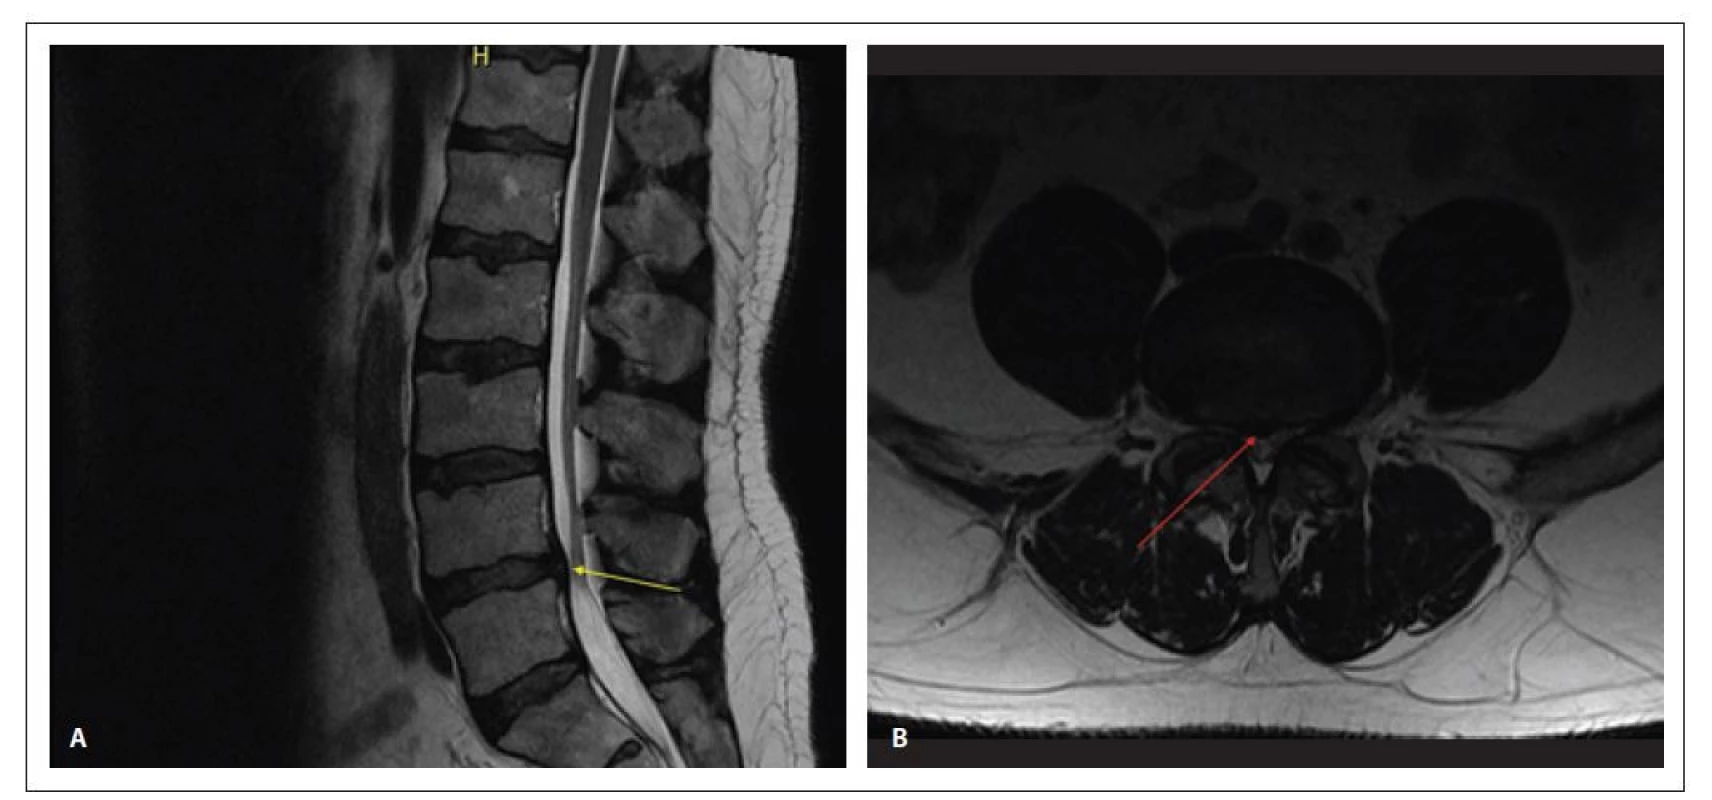 Kontrolní MR z prosince 2019 – T2 vážené obrazy v sagitální (A) a transverzální (B) rovině – došlo k postupné resorpci výhřezu
ploténky (šipka) a významné regresi stenosy páteřního kanálu ze 3 na 9 mm<br>
Fig. 2. Follow-up MRI (December 2019) – T2 weighted images in sagittal (A) and transversal (B) plane – apparent resorption of the disc
herniation and recovery from spinal stenosis from 3 to 9 mm width of the central canal.